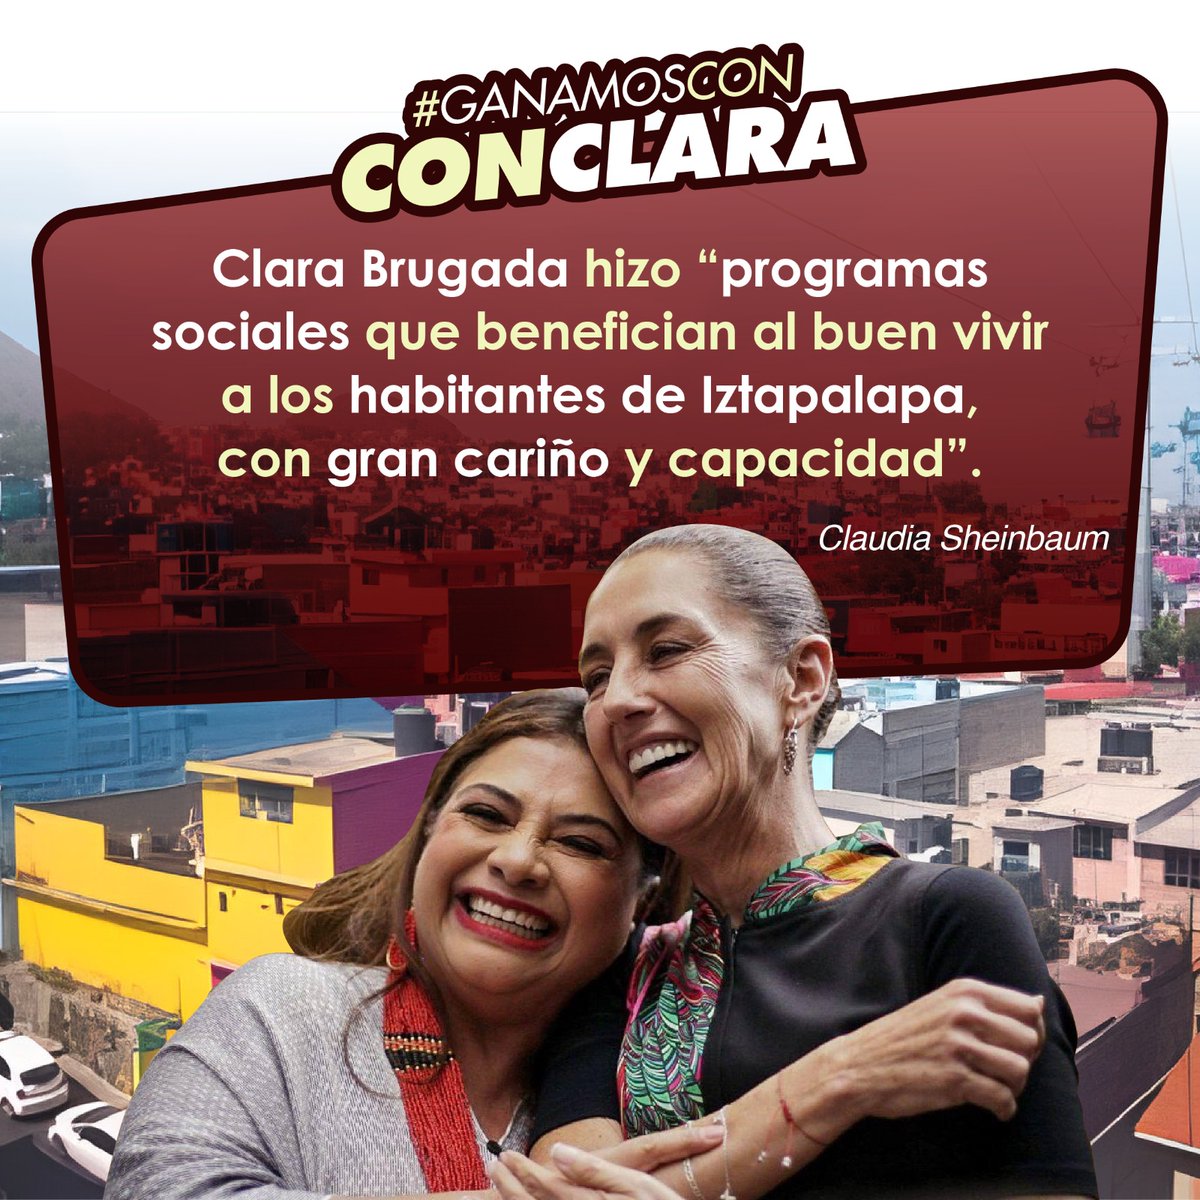 #ClaraJefaDeGobierno 
#GanamosConClara